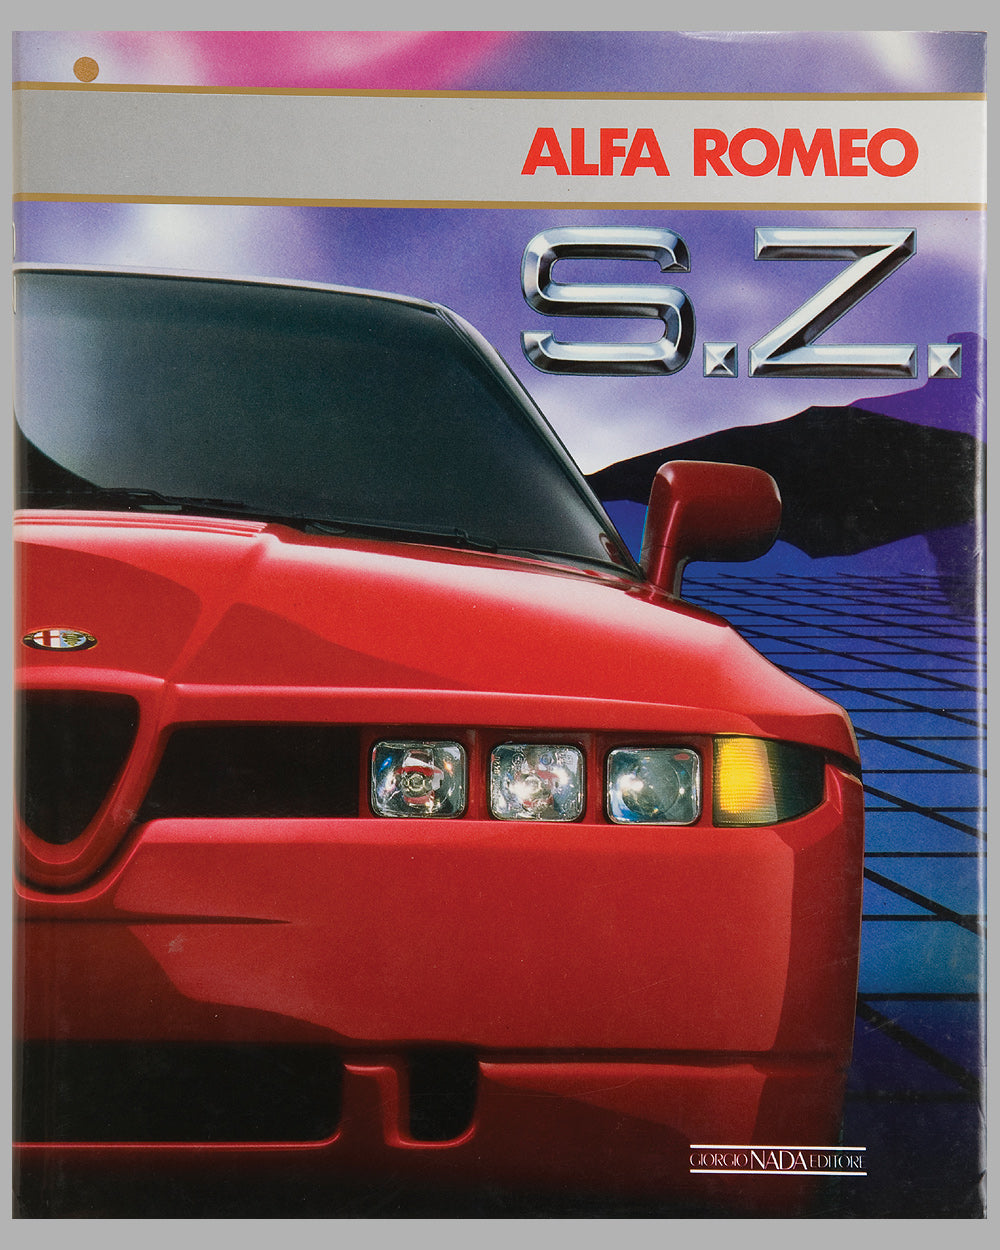 Alfa Romeo S. Z. book by R. Piatti